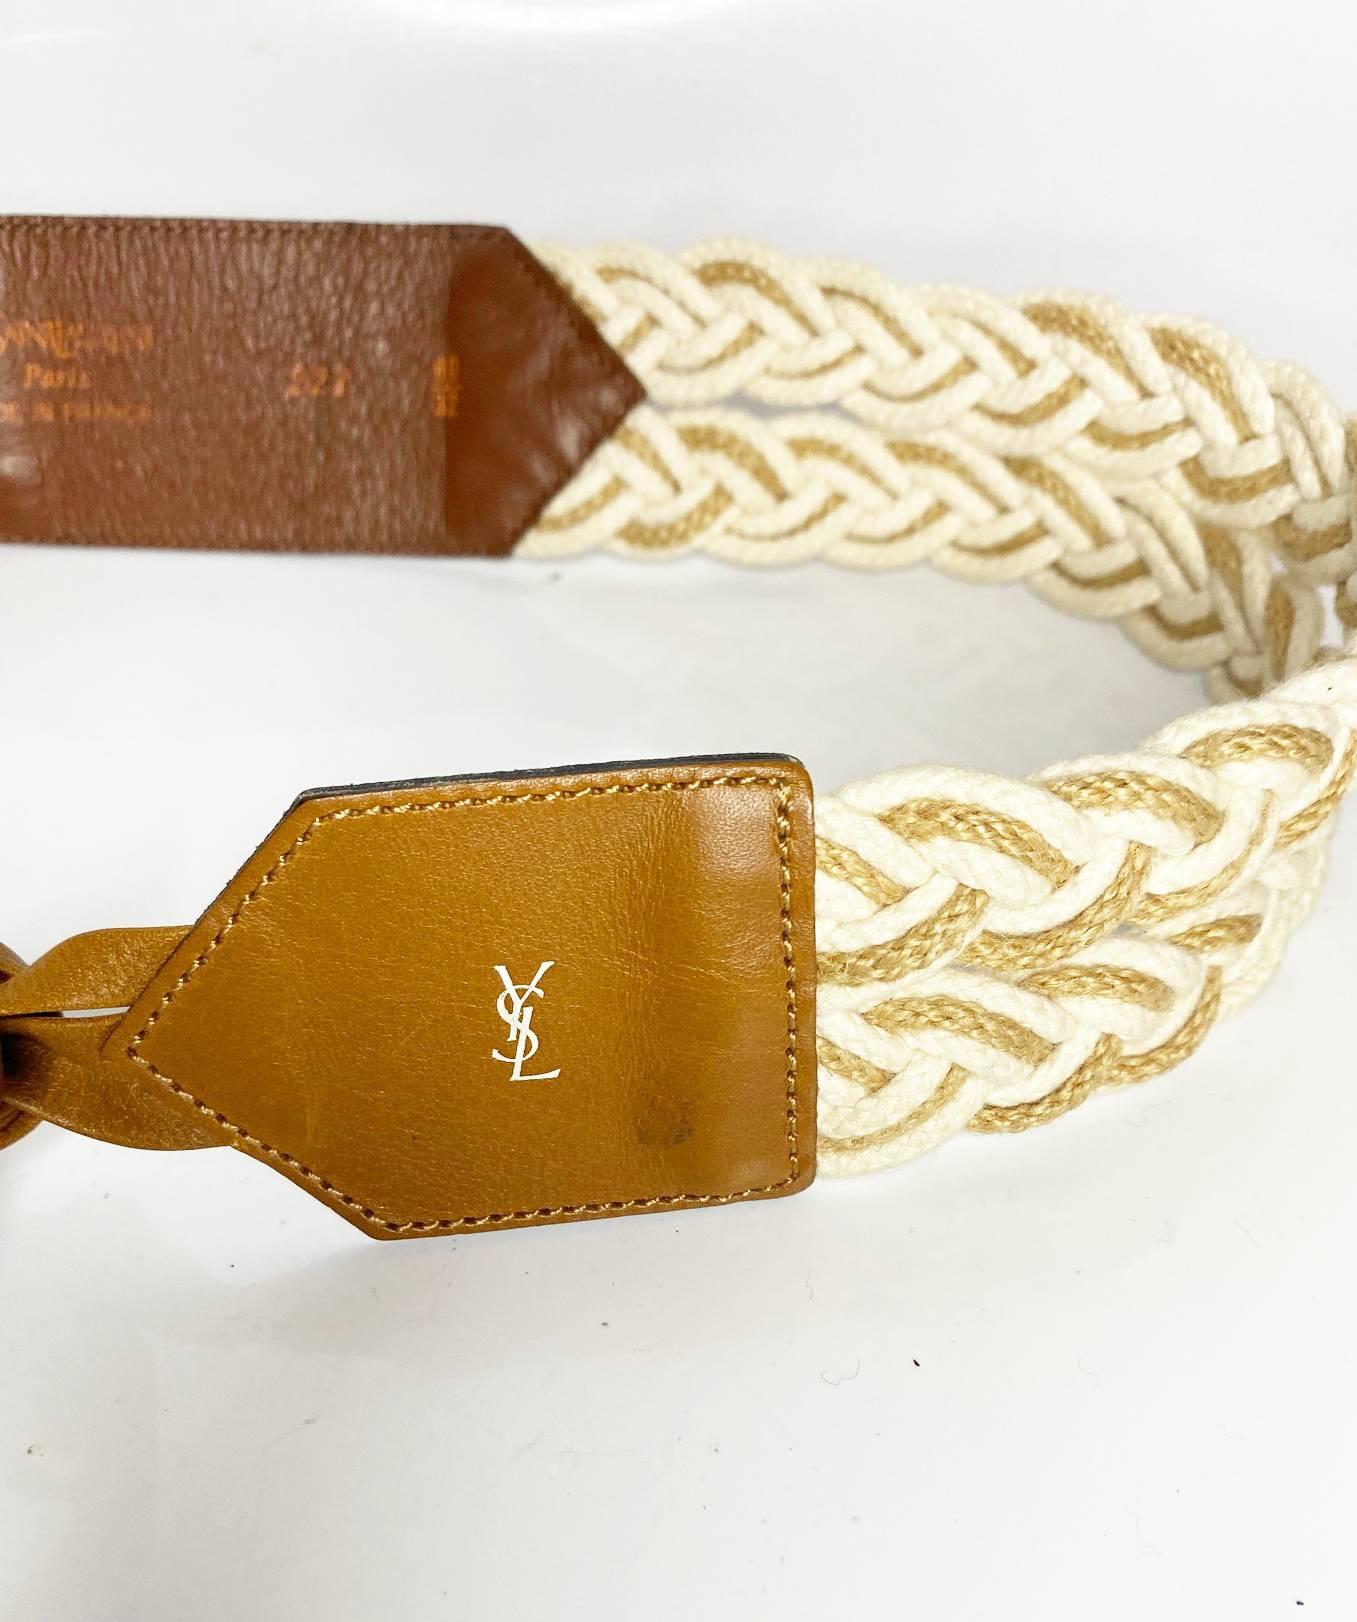 Yves Saint Laurent Krawattengürtel aus Leder und Stoff, geflochten, braun Dieser stilvolle Krawattengürtel ist aus hochwertigem Leder und Stoff gefertigt und bietet Ihnen ein zeitloses Stück, das Sie über Jahre hinweg tragen können. Das detailreiche